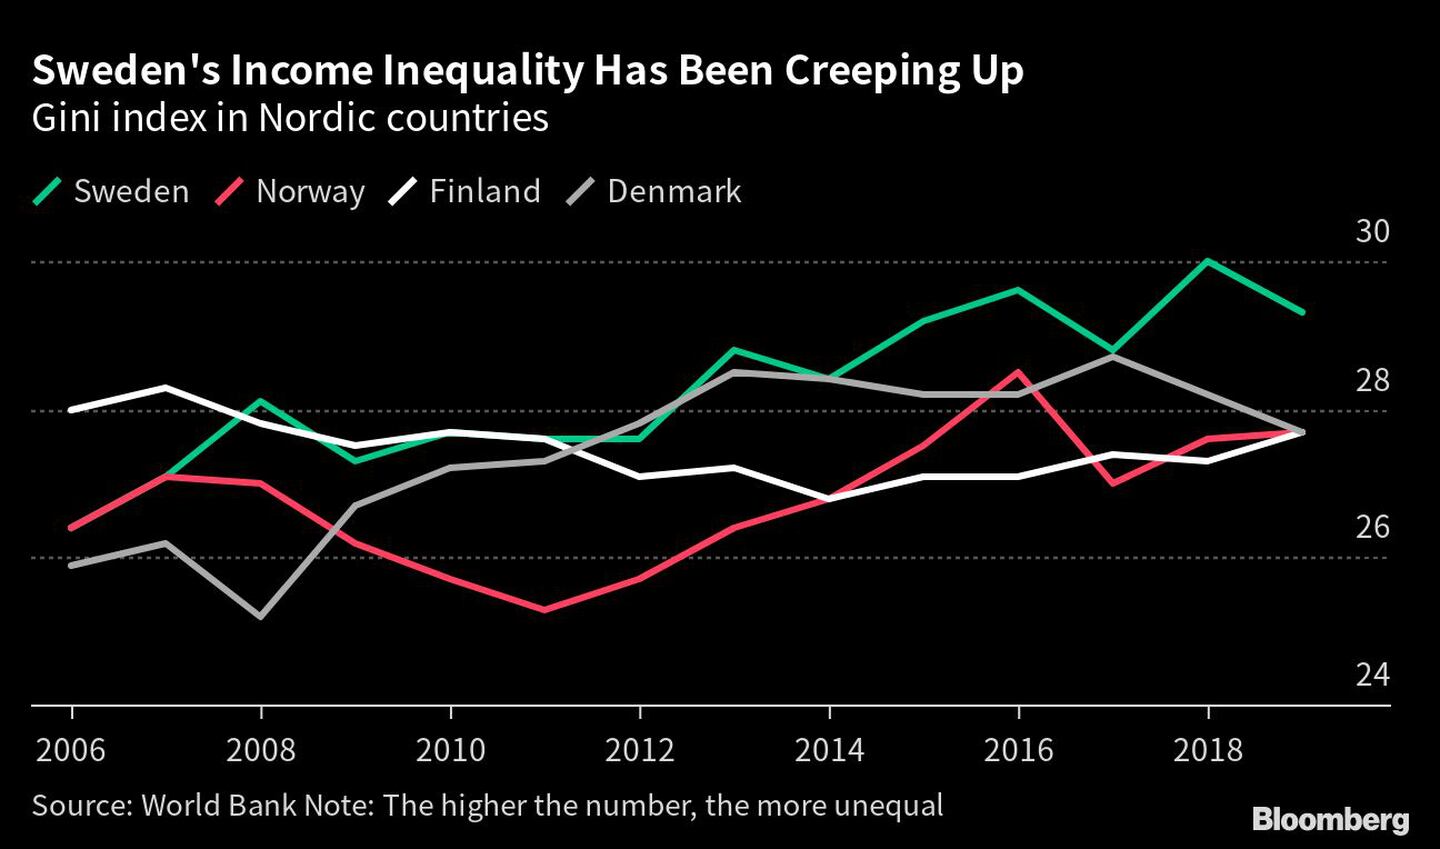 Aumenta la desigualdad de ingresos en Suecia | Índice de Gini en los países nórdicosdfd